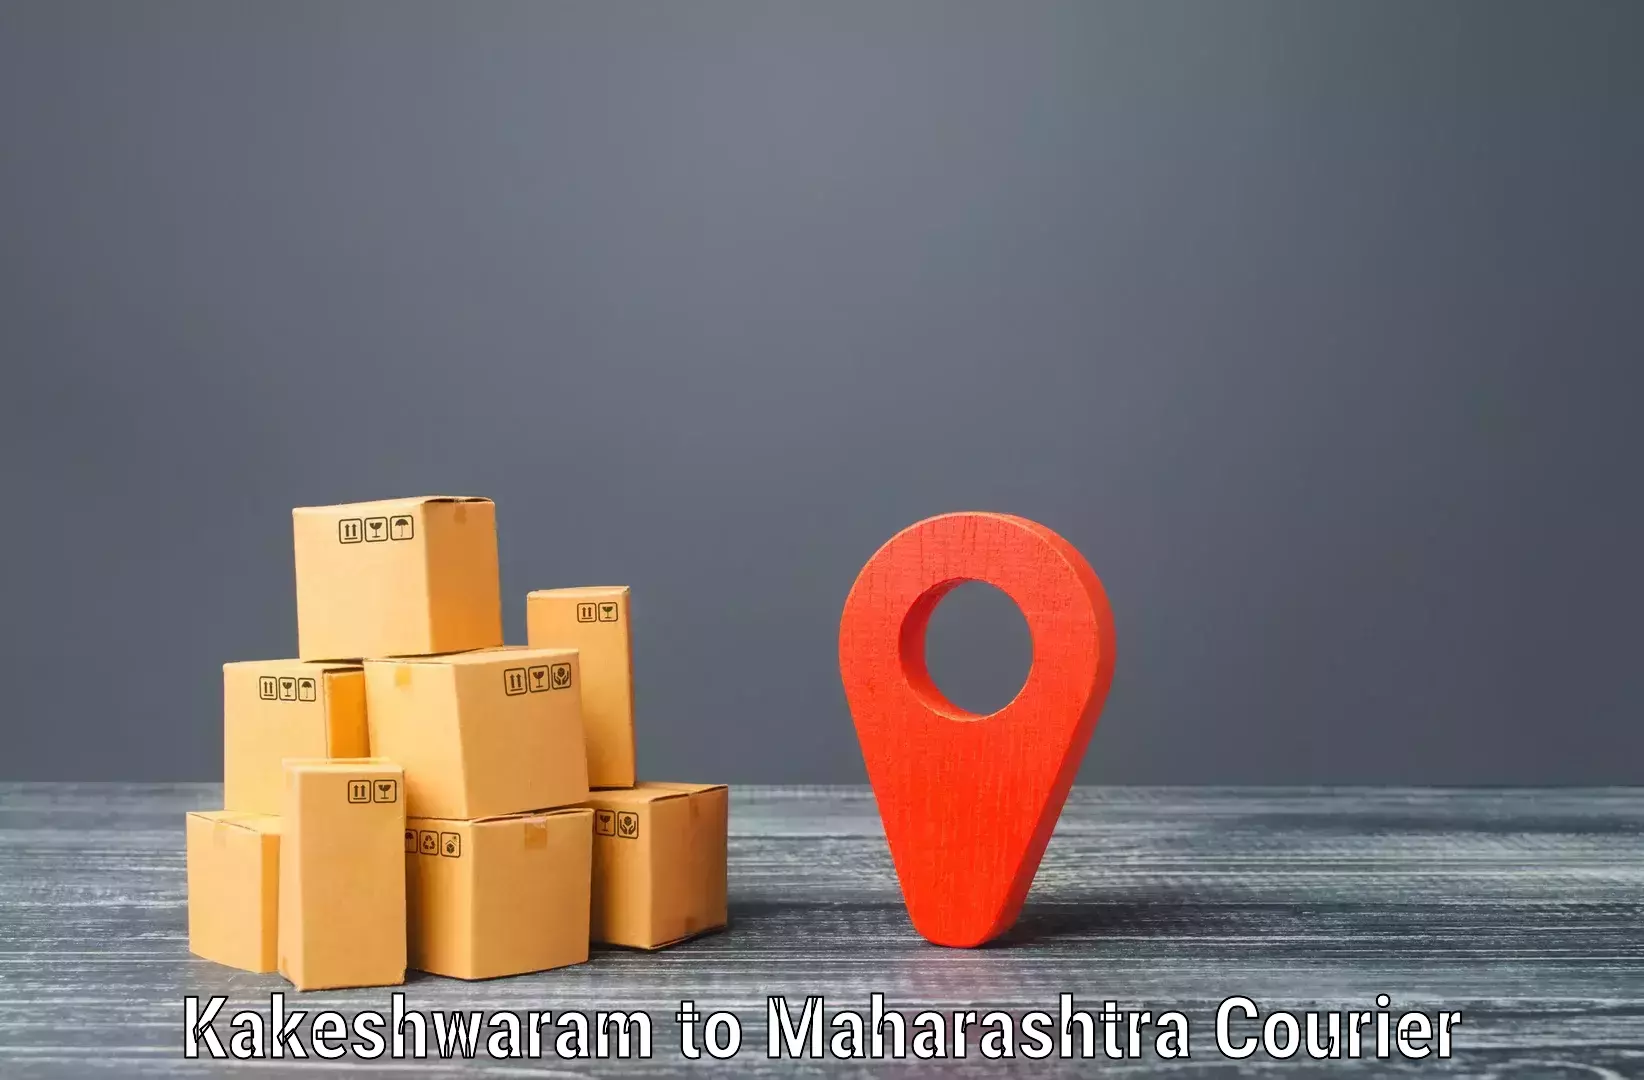 Tech-enabled shipping Kakeshwaram to Hinganghat